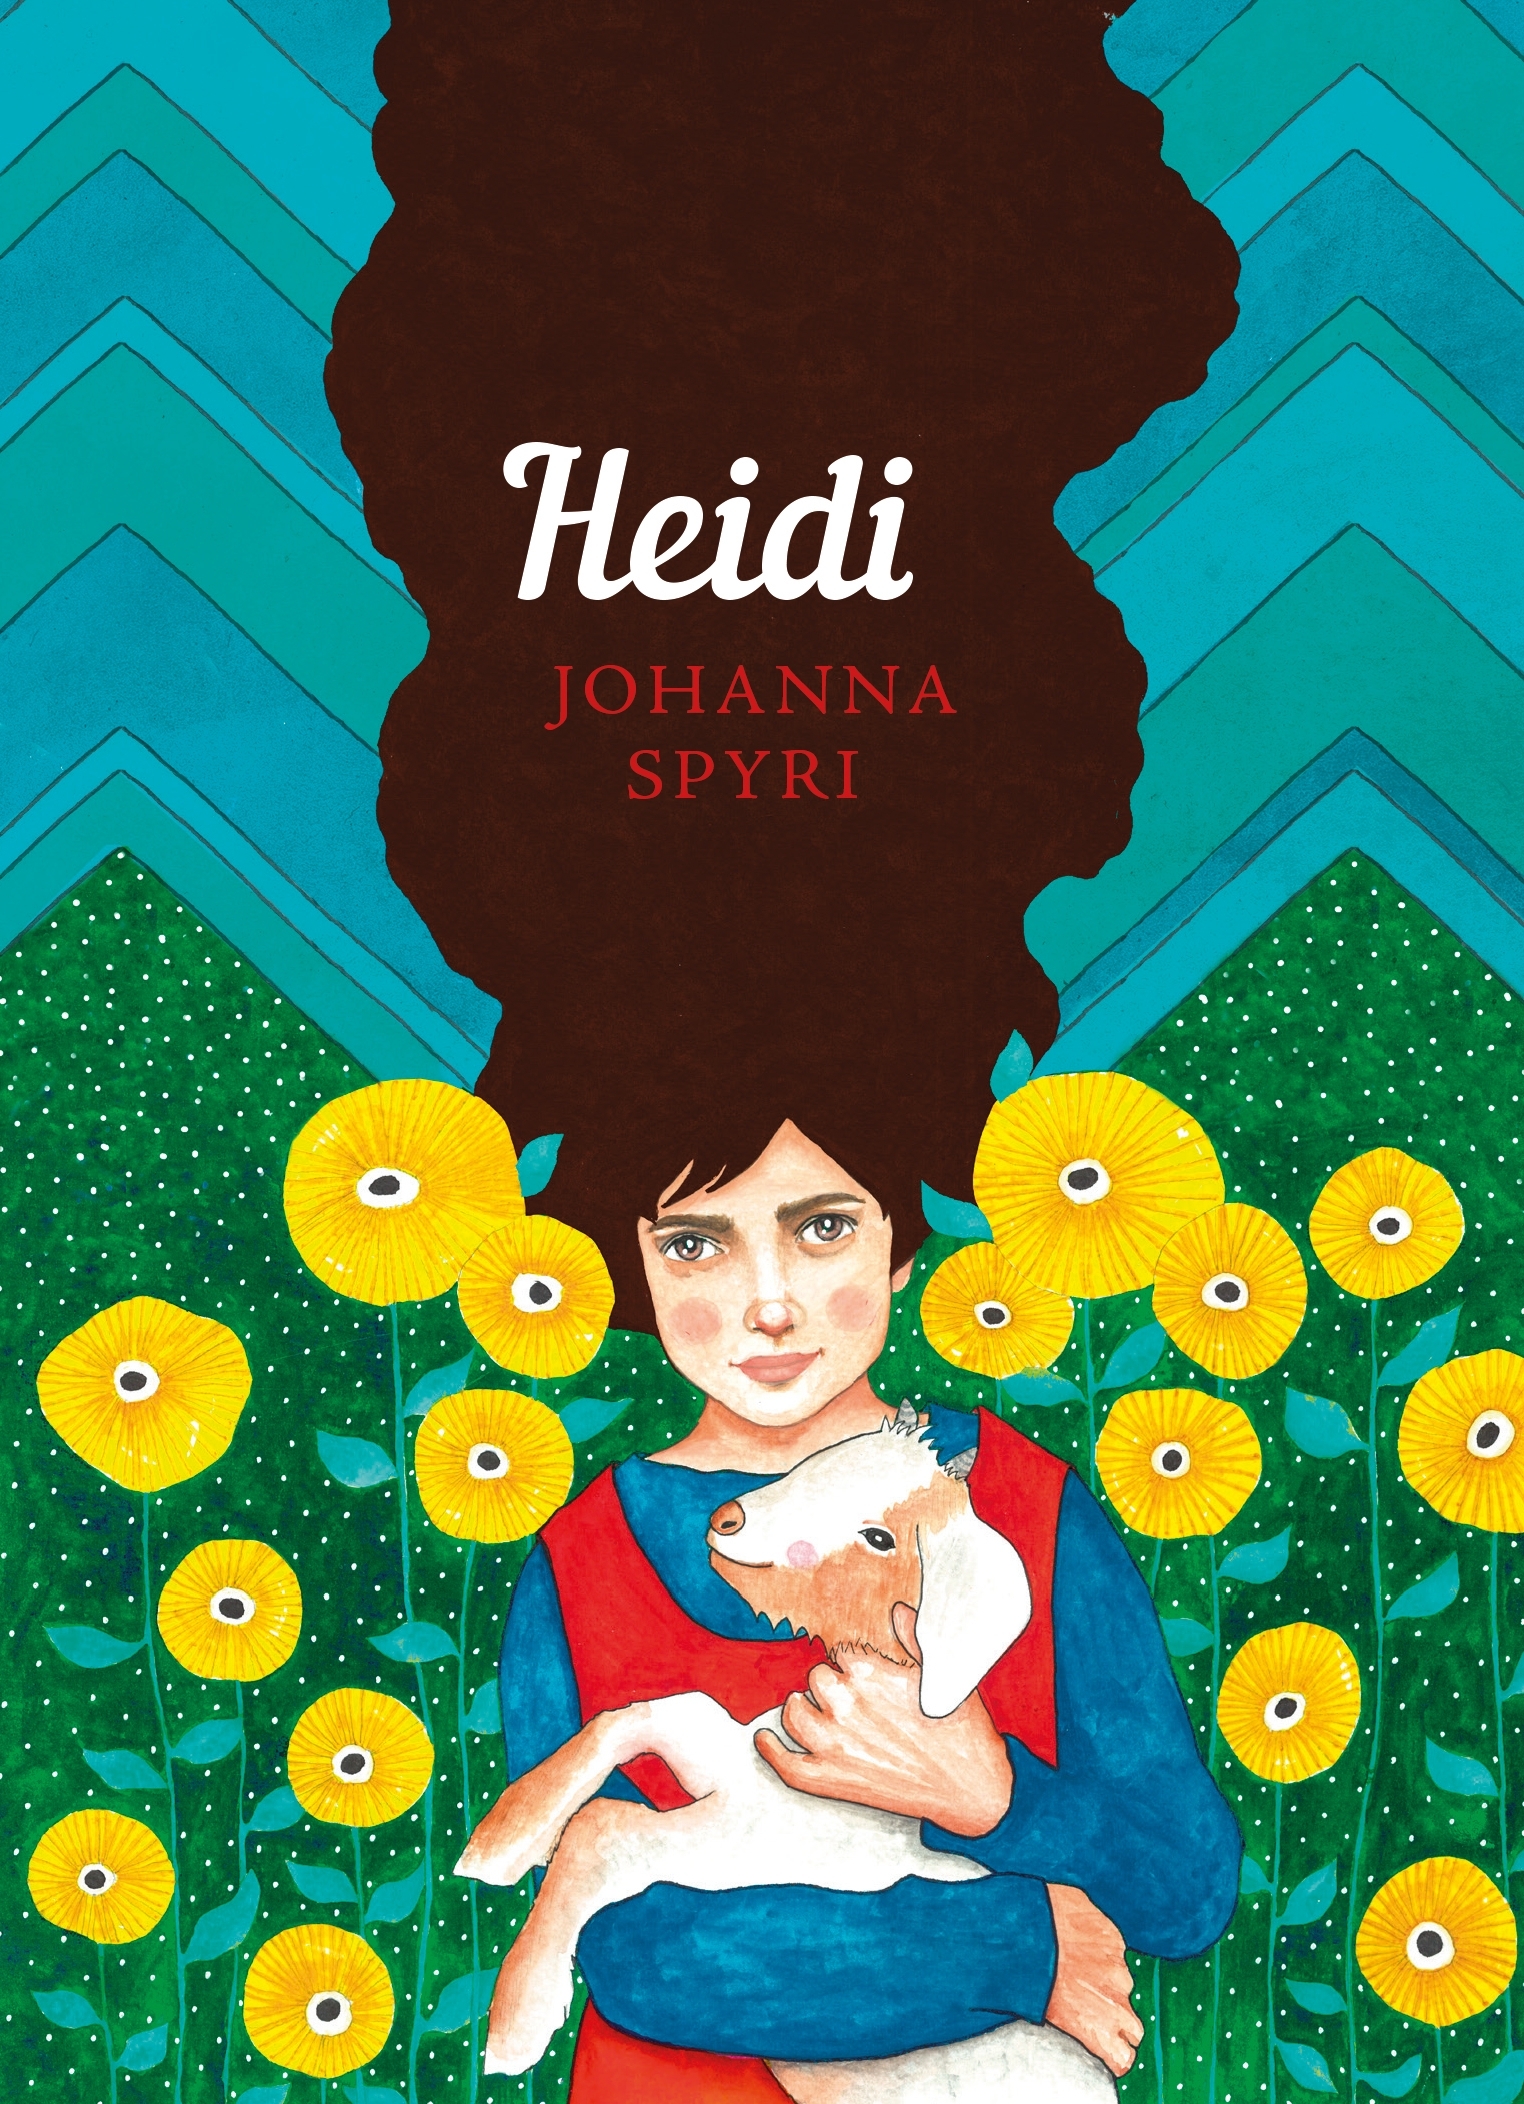 book review of heidi